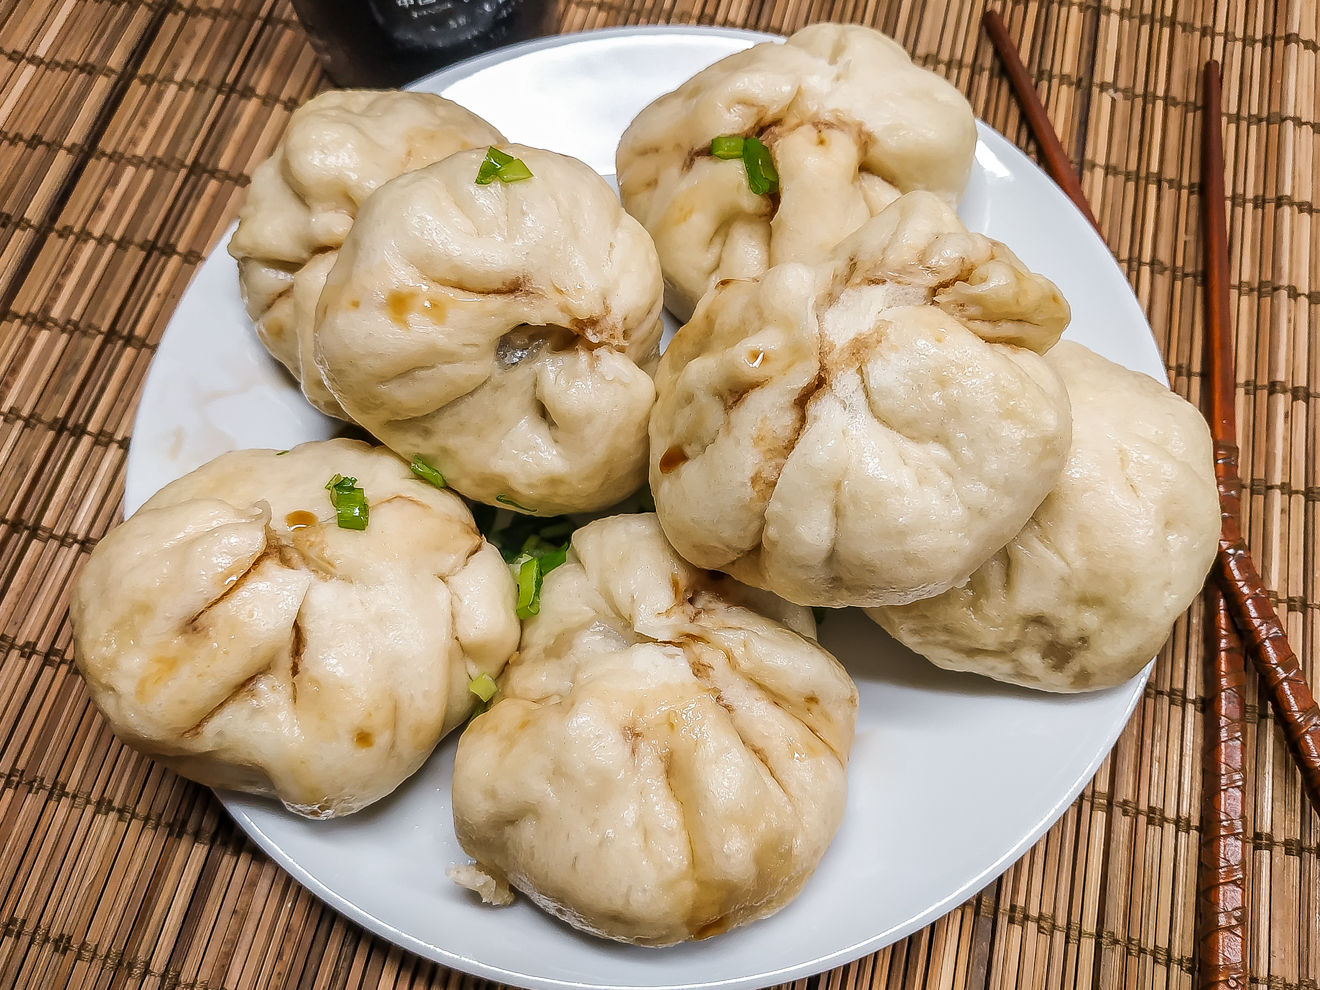 Баоцзы (包子) - китайские паровые булочки – привет, китай! hello china